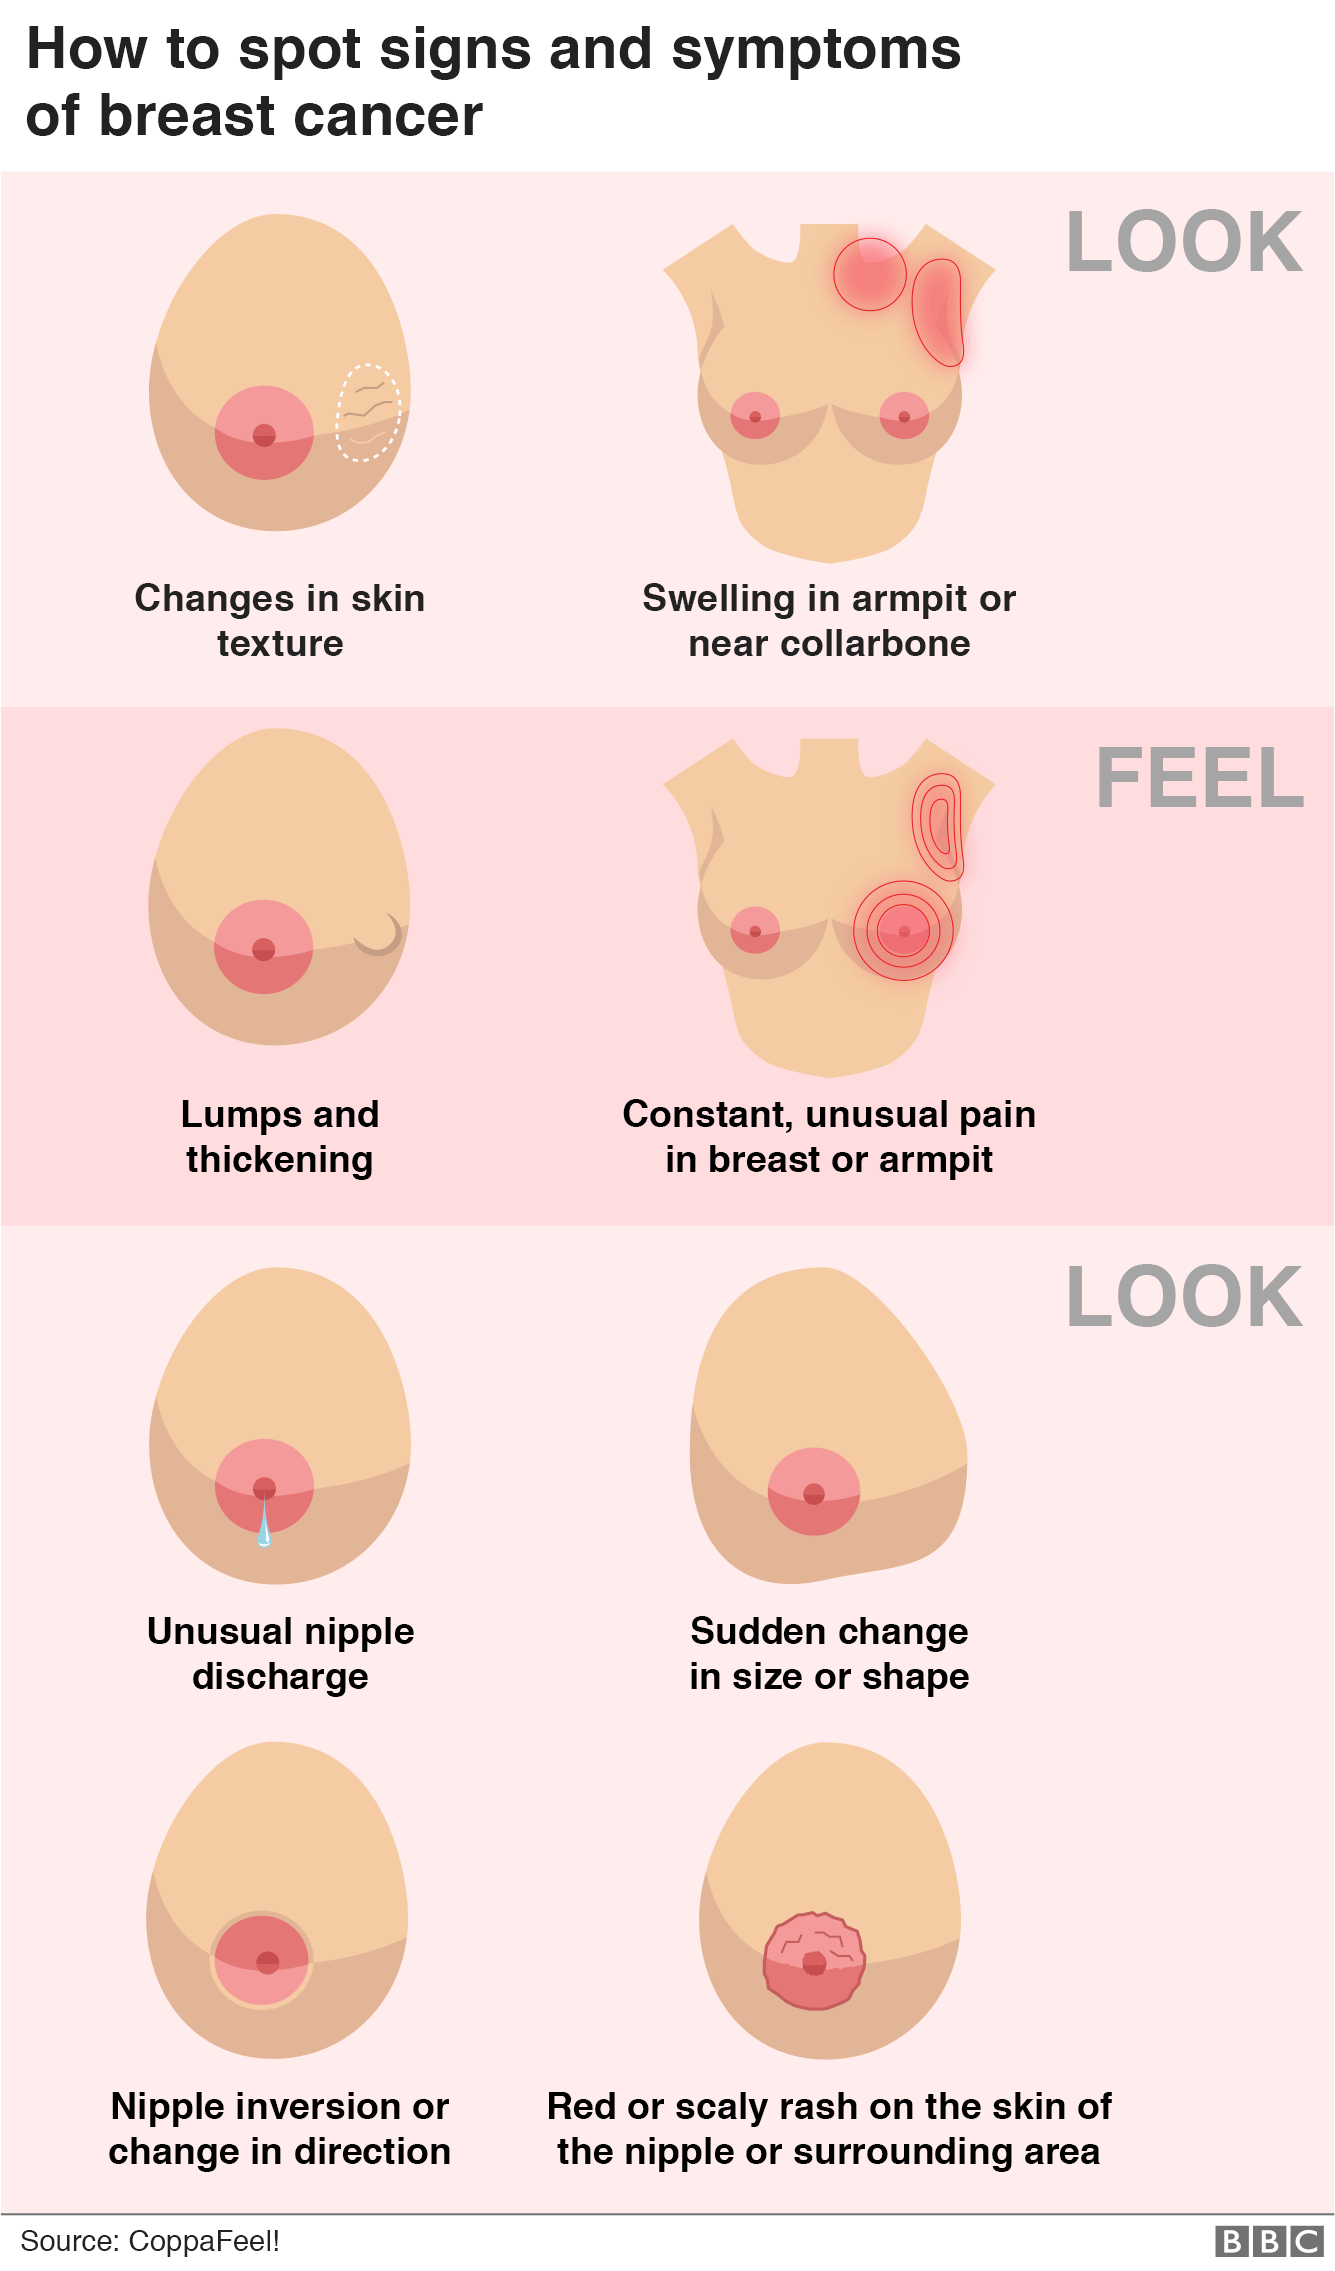 Графика, показывающая, как определить признаки и симптомы рака груди